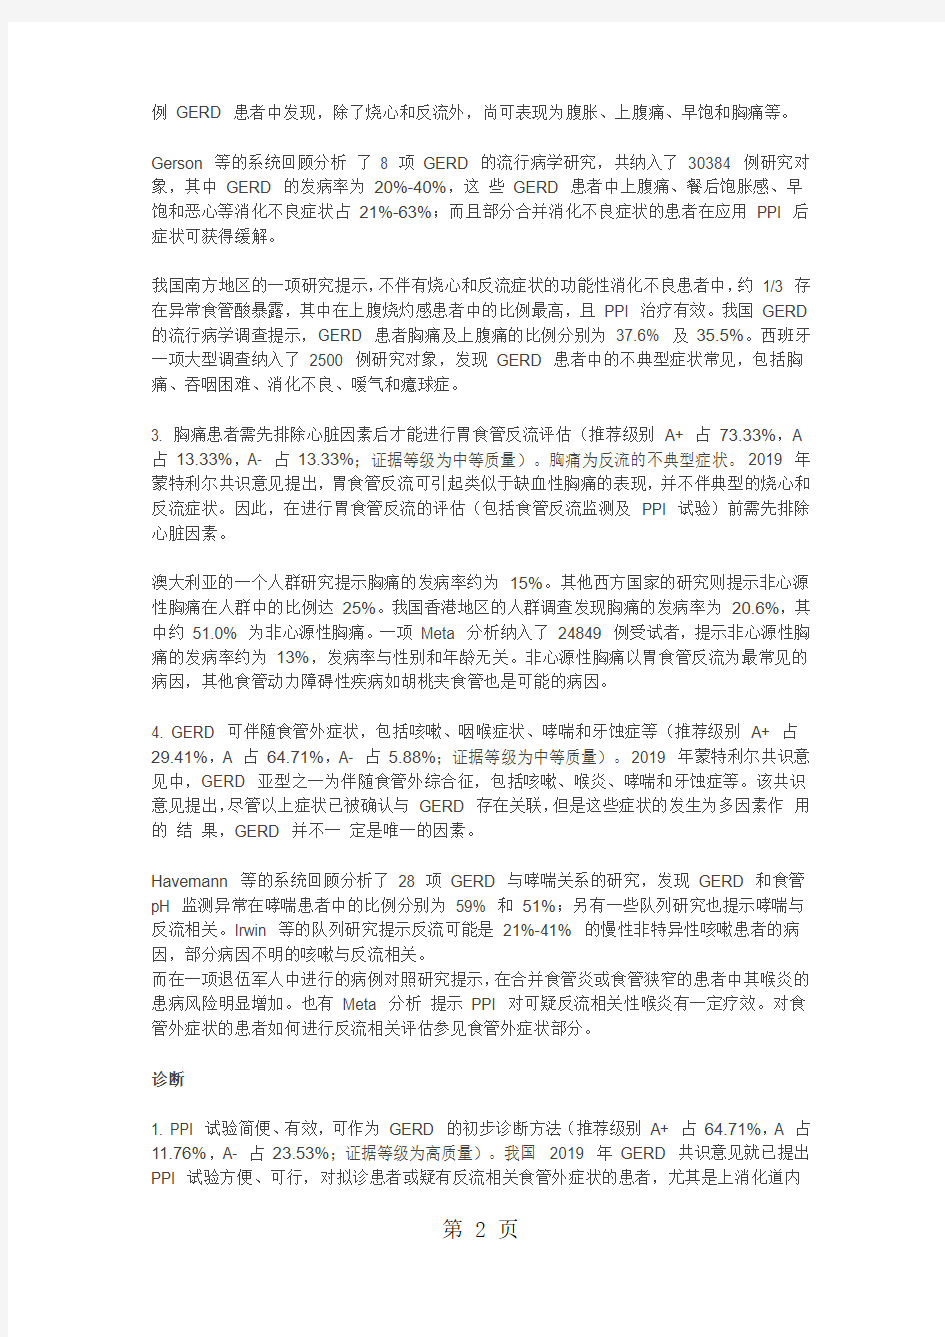 2019 年中国胃食管反流病专家共识意见13页